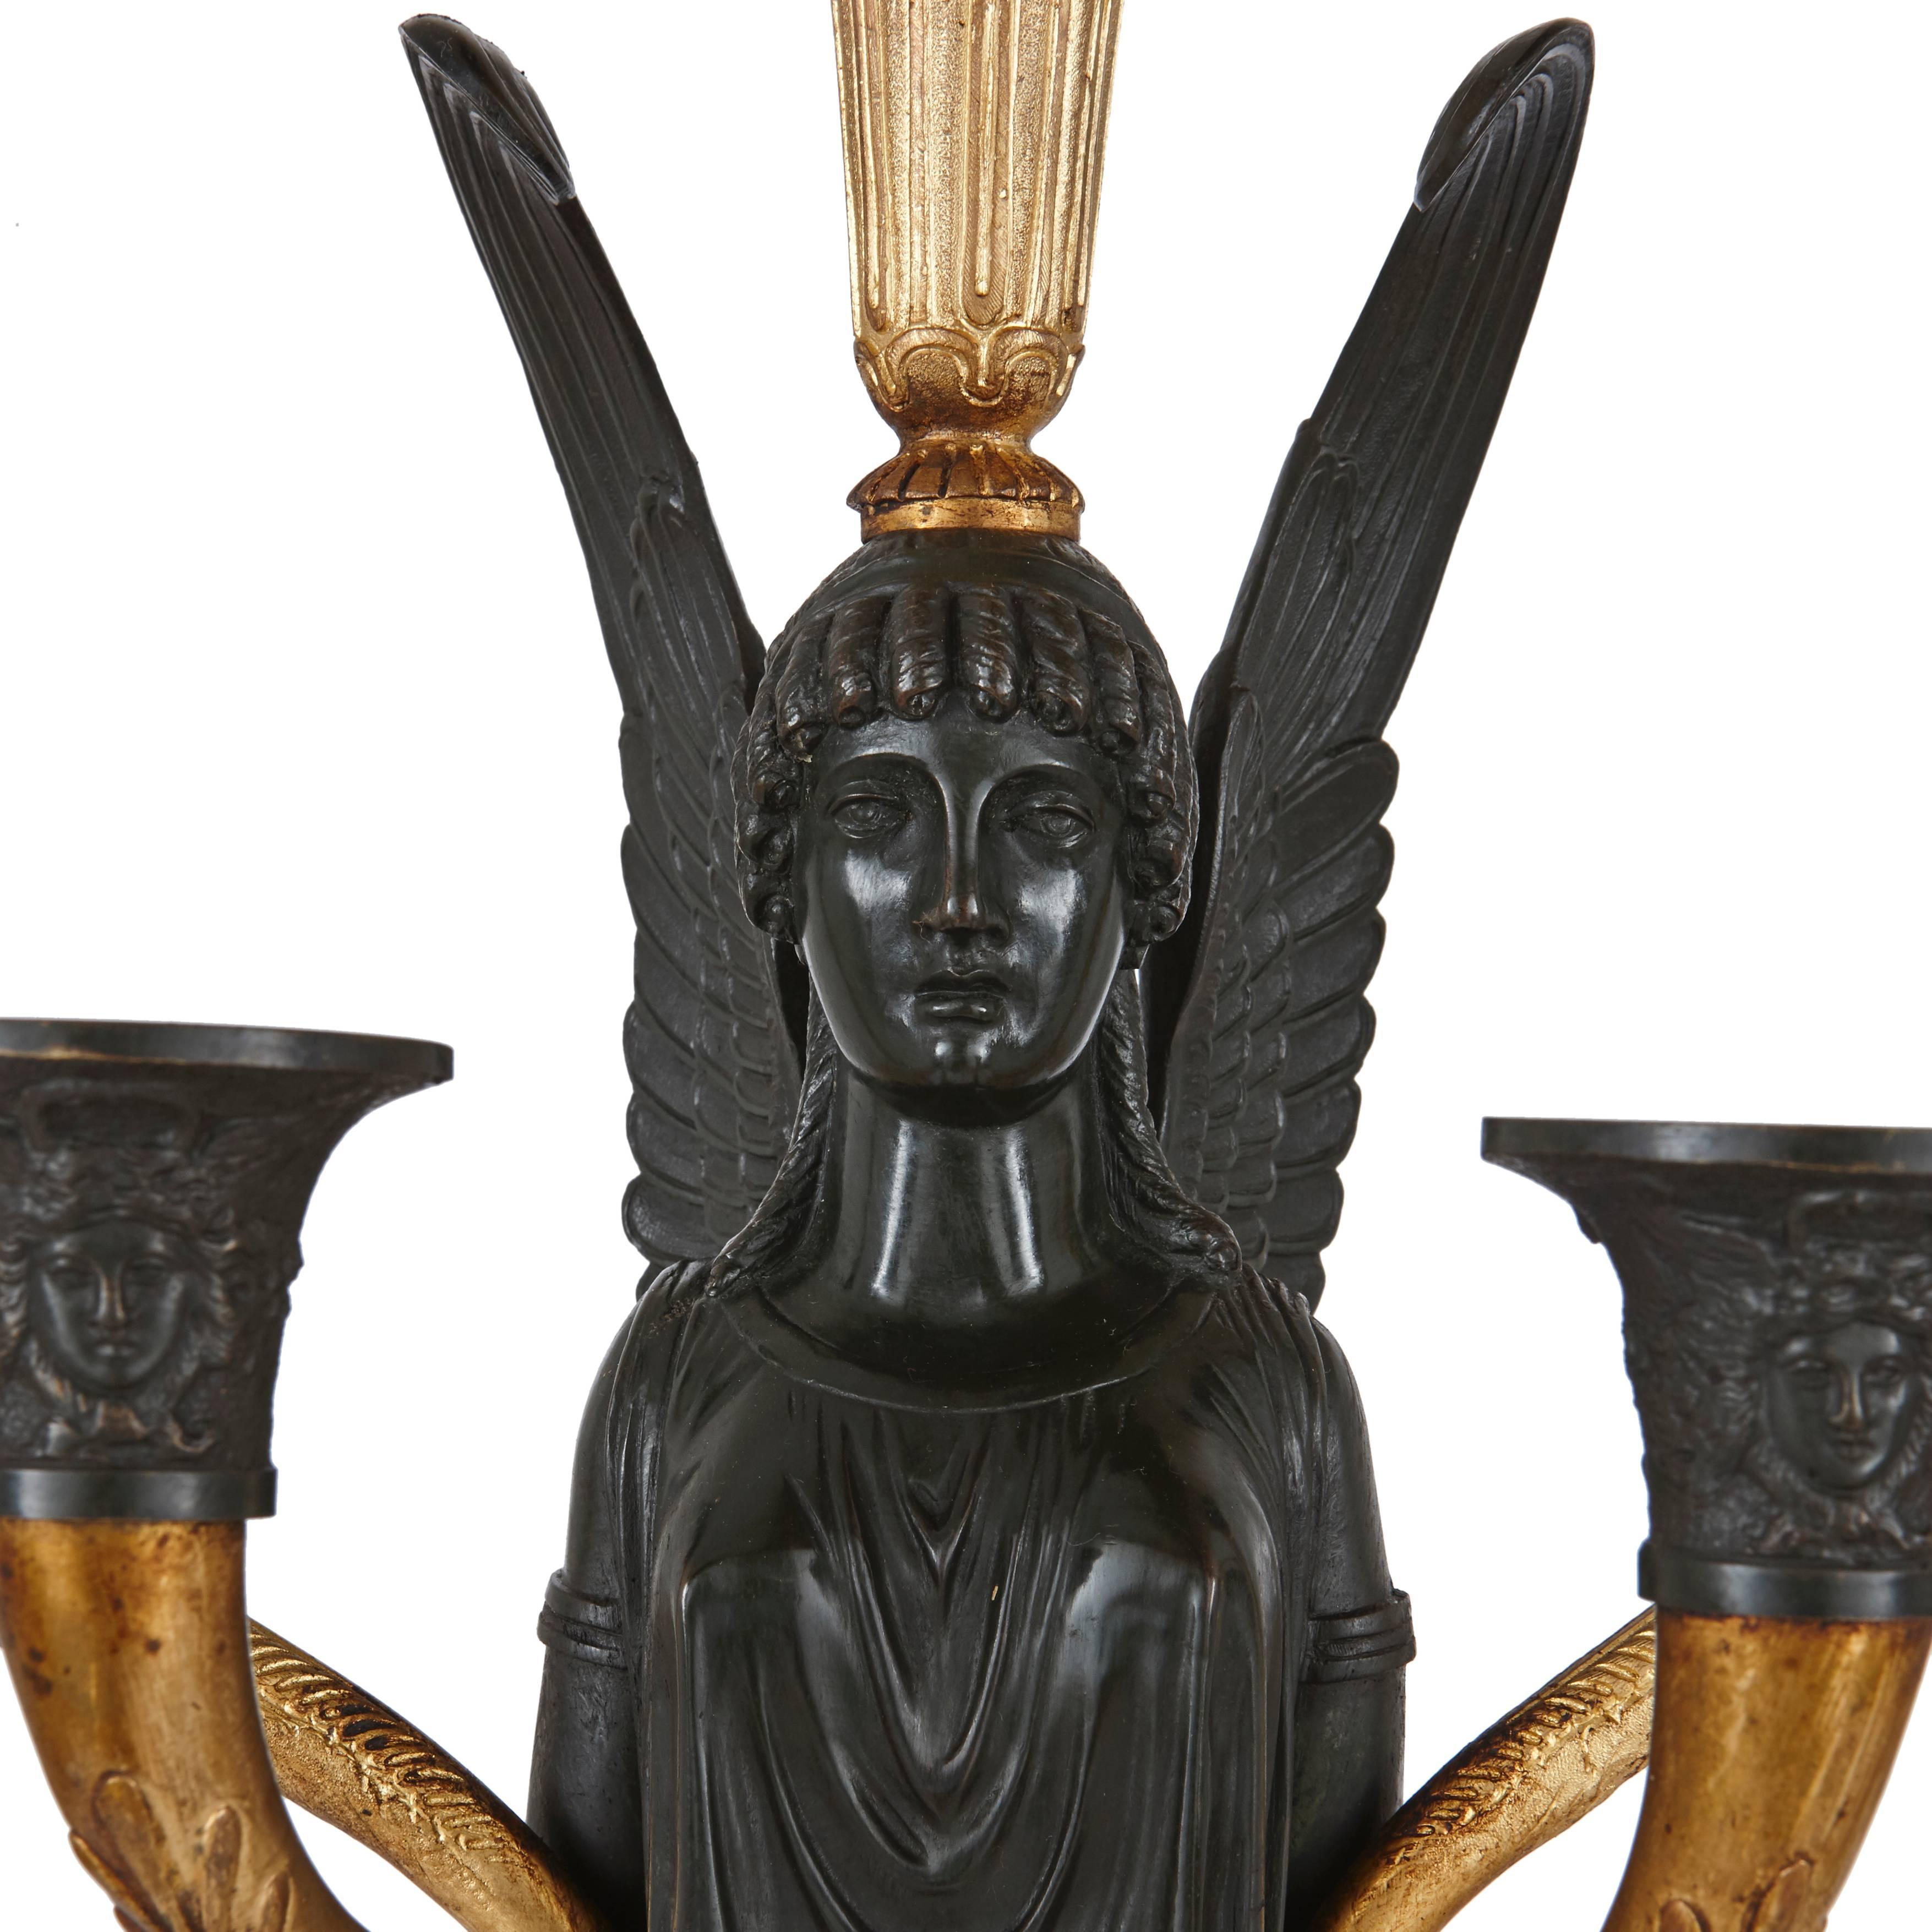 Ein Paar vergoldete und patinierte Empire-Bronze-Kandelaber. Jeweils mit einer geflügelten viktorianischen Frauenfigur, die eine Fackel auf dem Kopf und leichte Arme an der Seite trägt, auf einem quadratischen Sockel aus Giallo di Siena-Marmor.